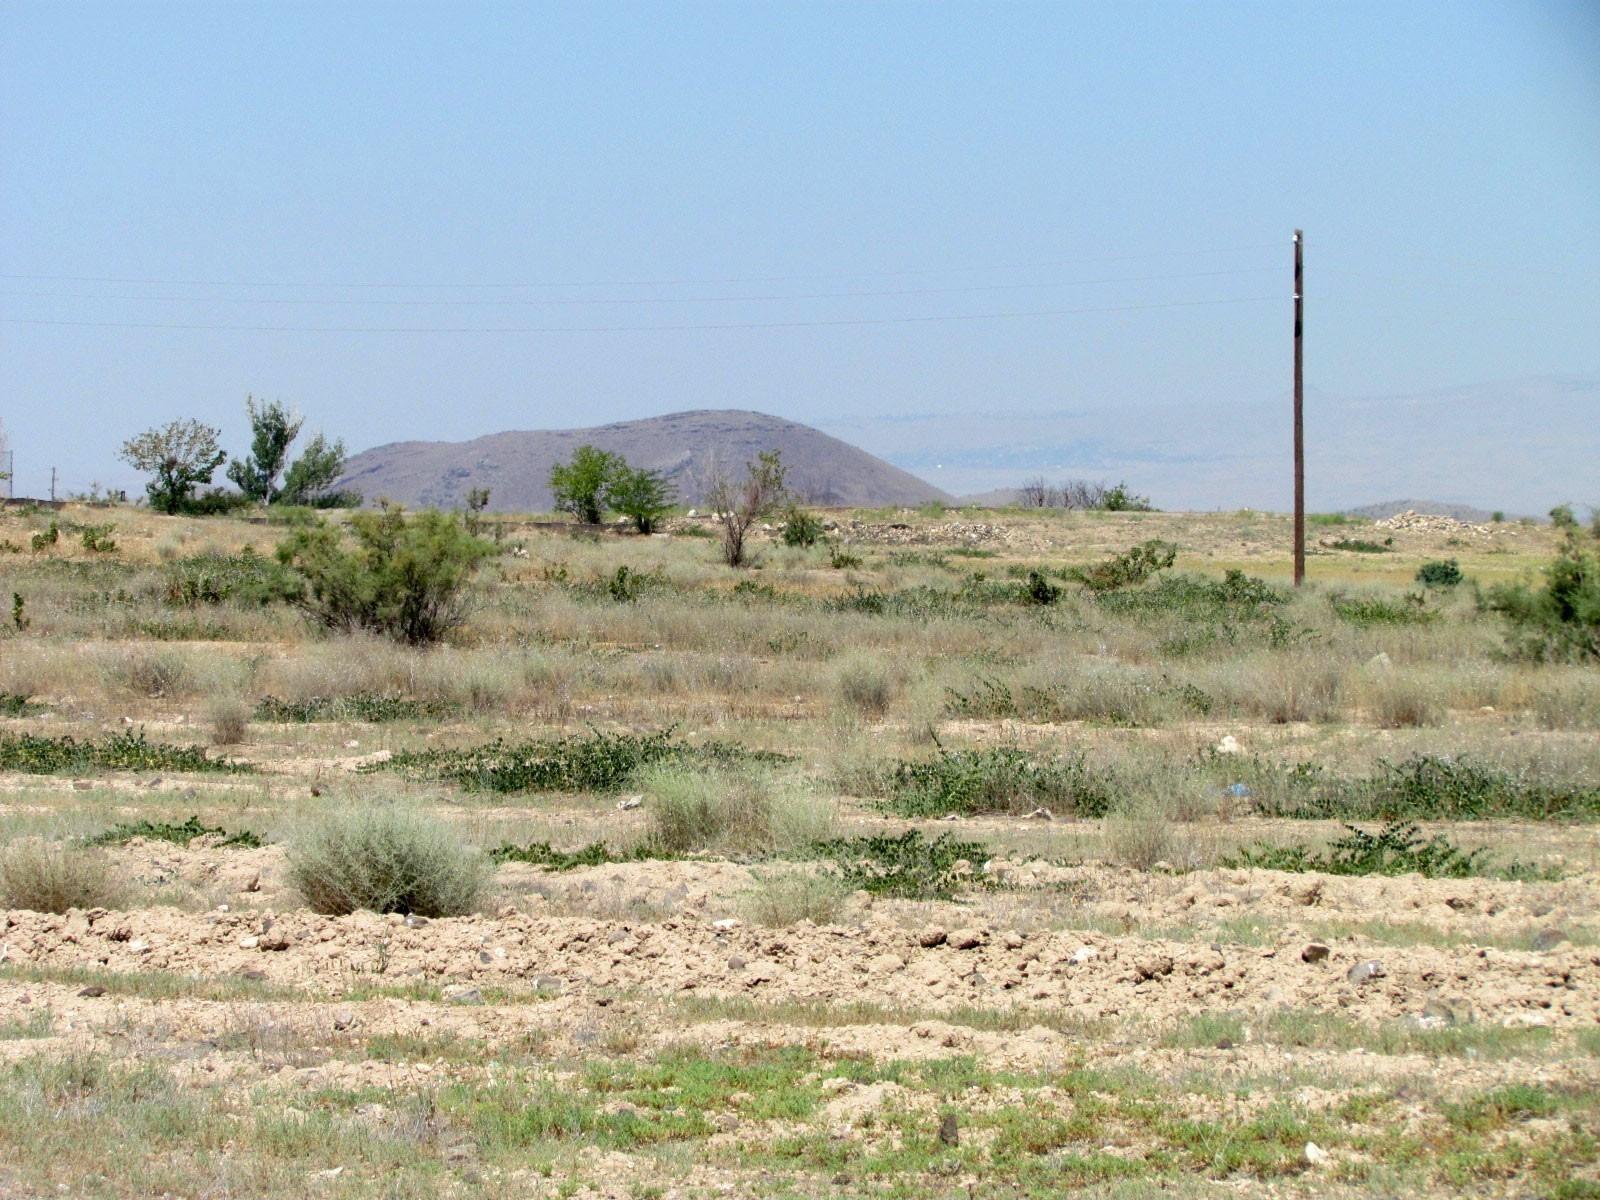 Պարենի եւ գյուղատնտեսության կազմակերպությունն անդրադարձել է Հայաստանում հողերի չօգտագործման խնդրին